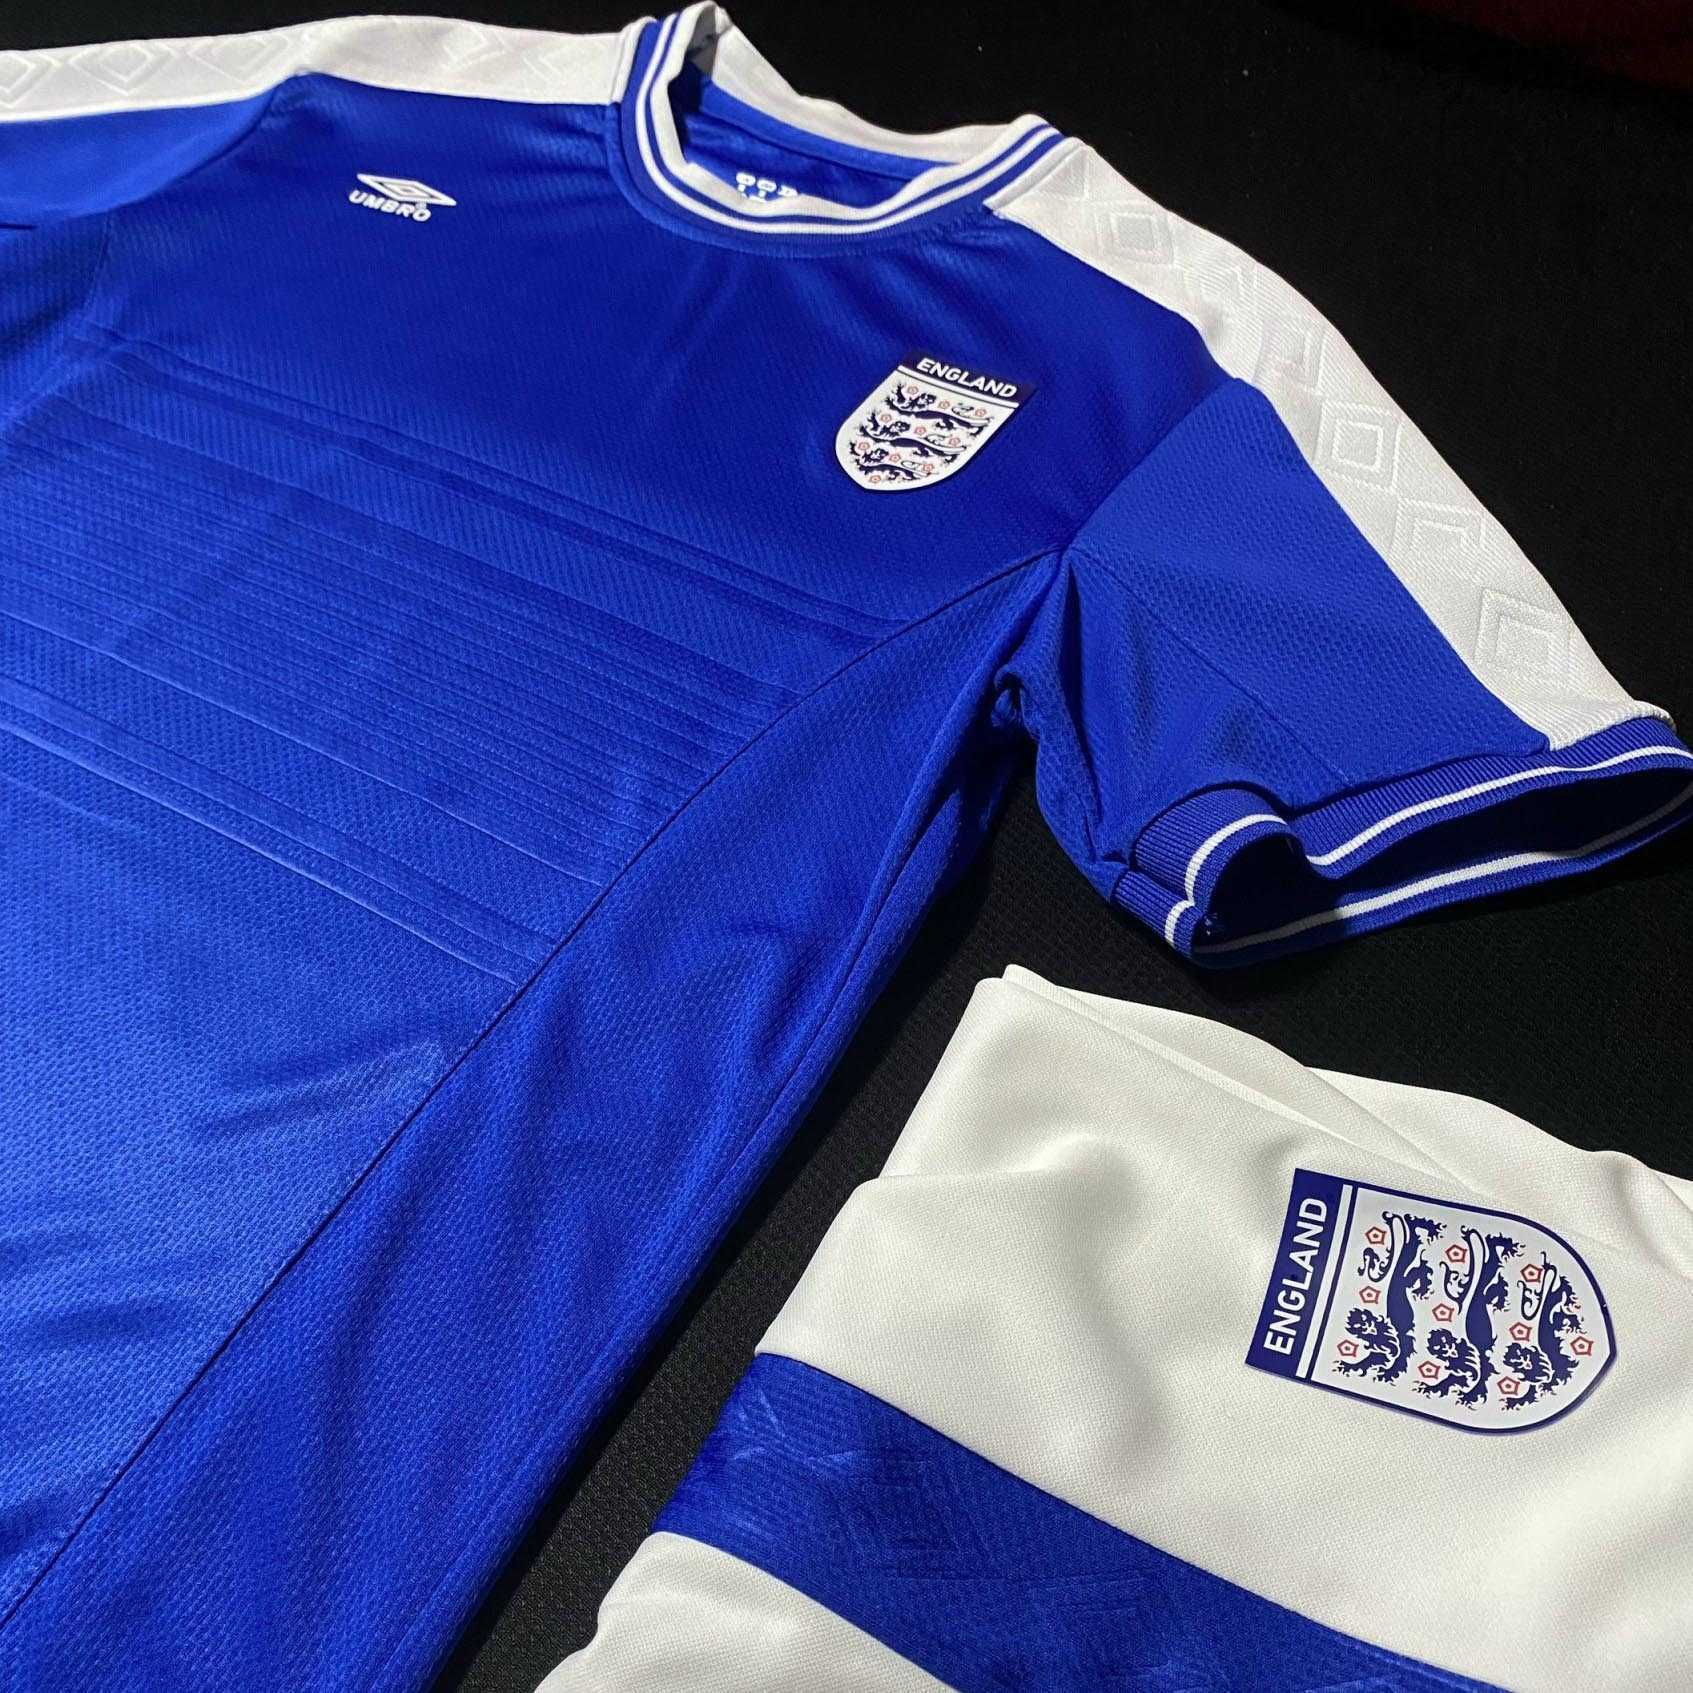 Bộ quần áo đá bóng đội tuyển anh năm 2000 logo england umbro màu xanh biển đậm vải thái trước